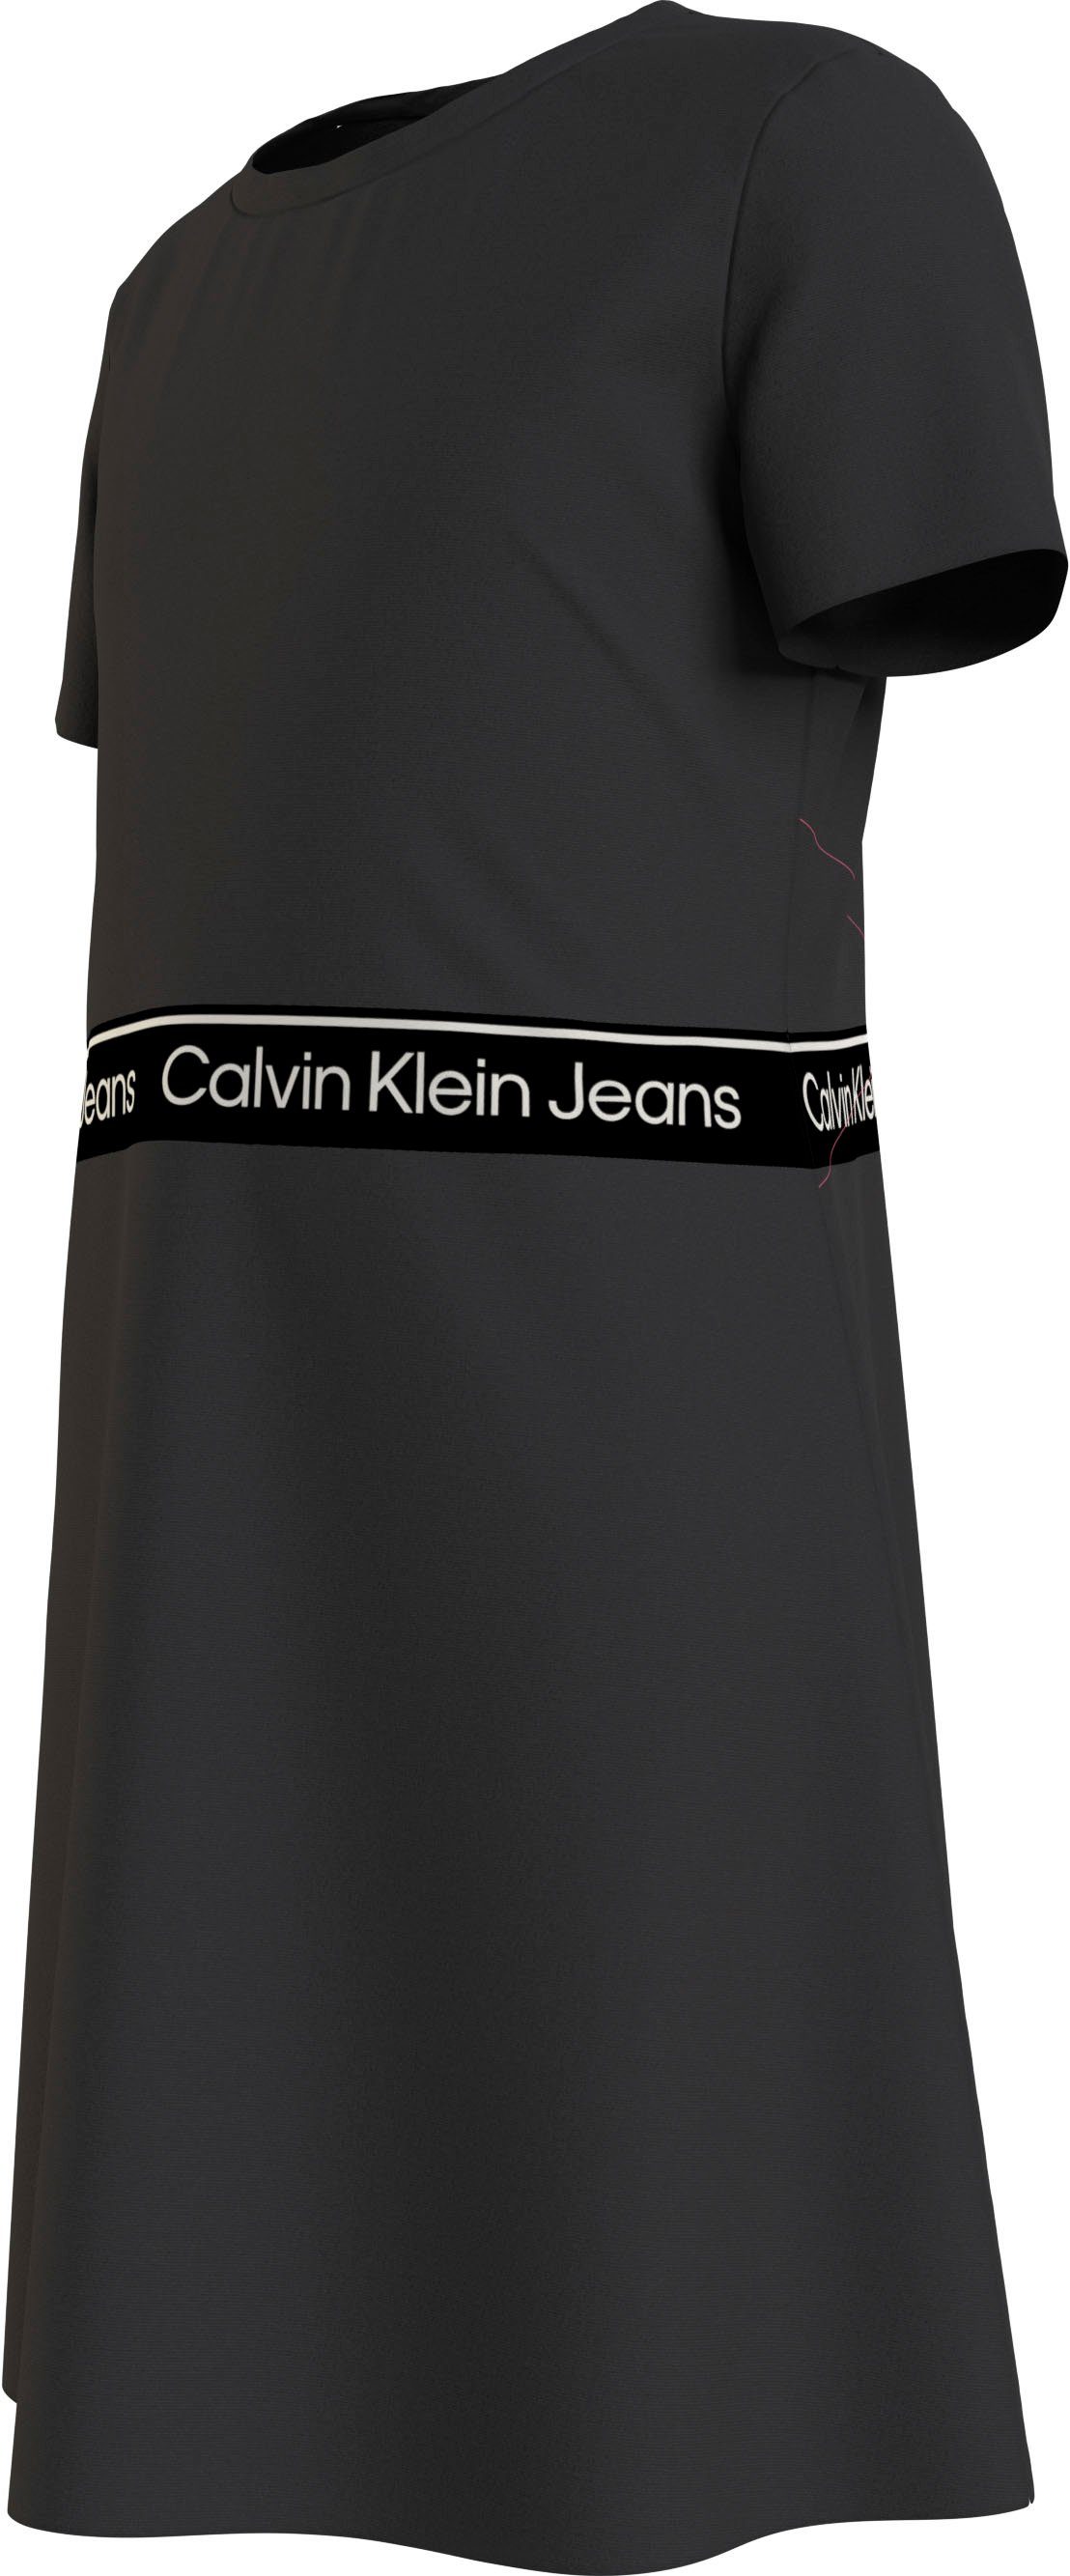 Calvin Klein Jeans Skaterkleid PUNTO Ck DRESS LOGO SS Black TAPE